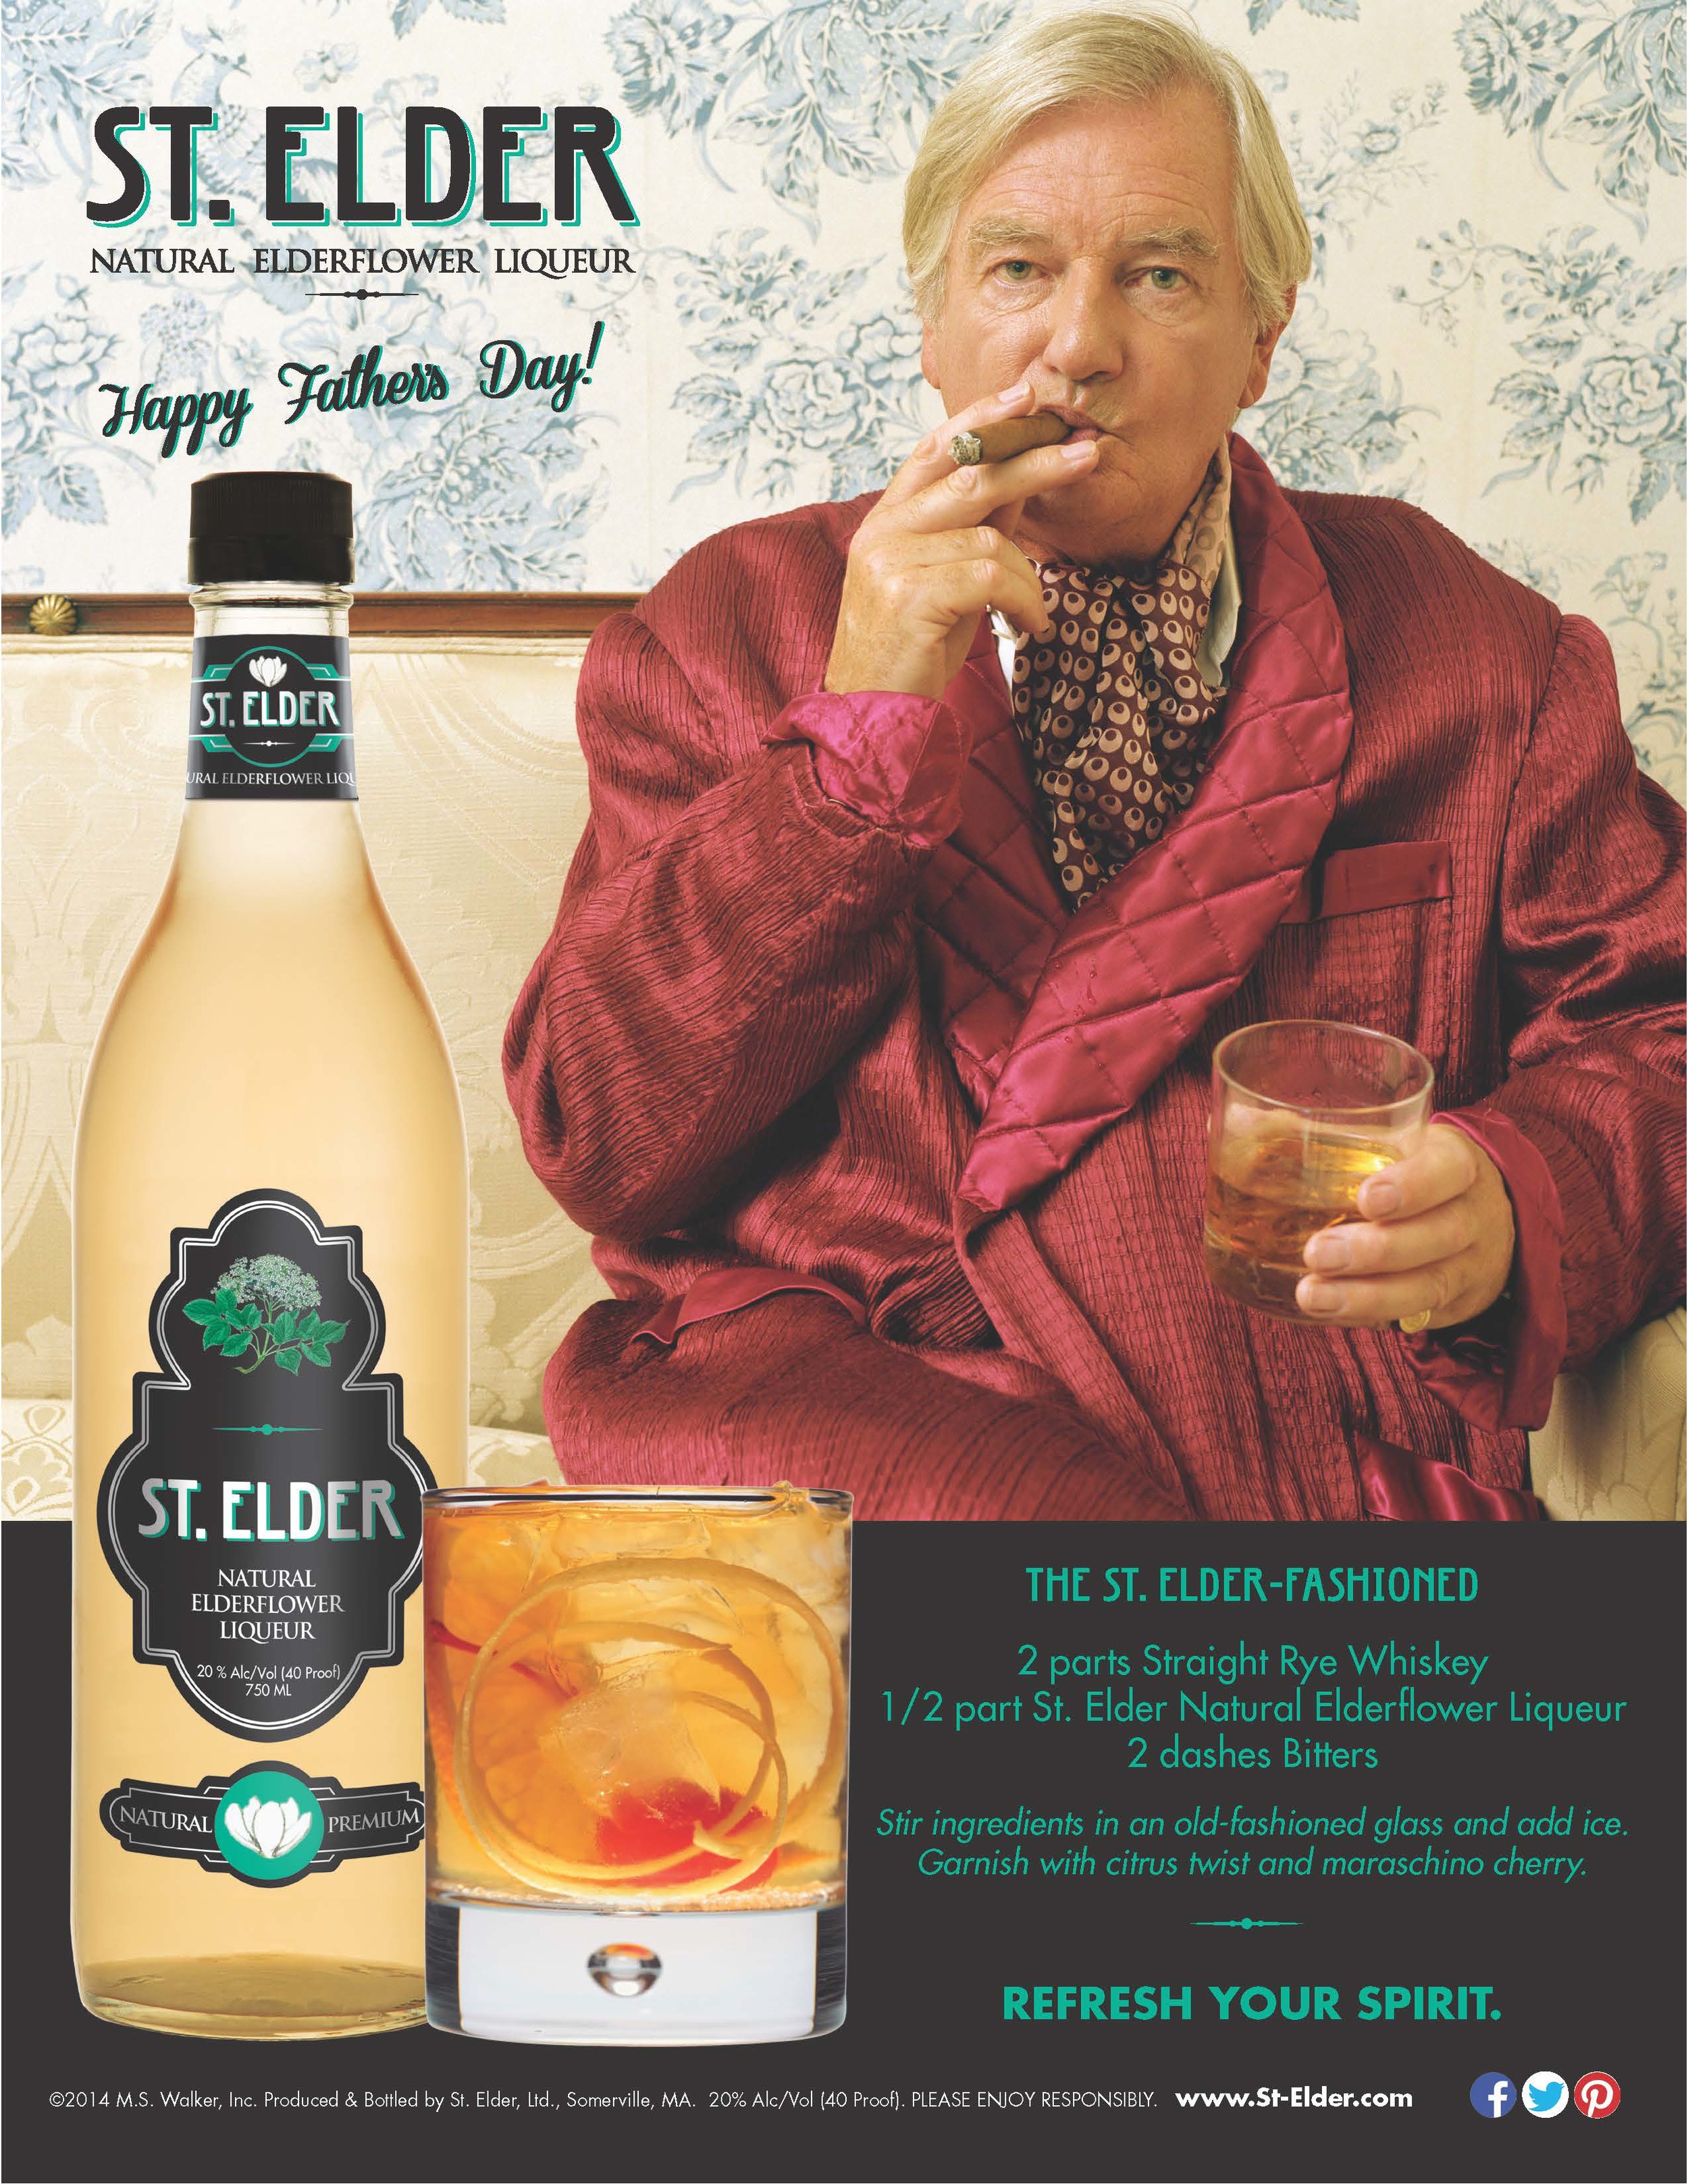 Пару постеров старой рекламы алкоголя. St. Elder Natural Elderflower Liqueur История,Алкоголь,Ликеры,Реклама